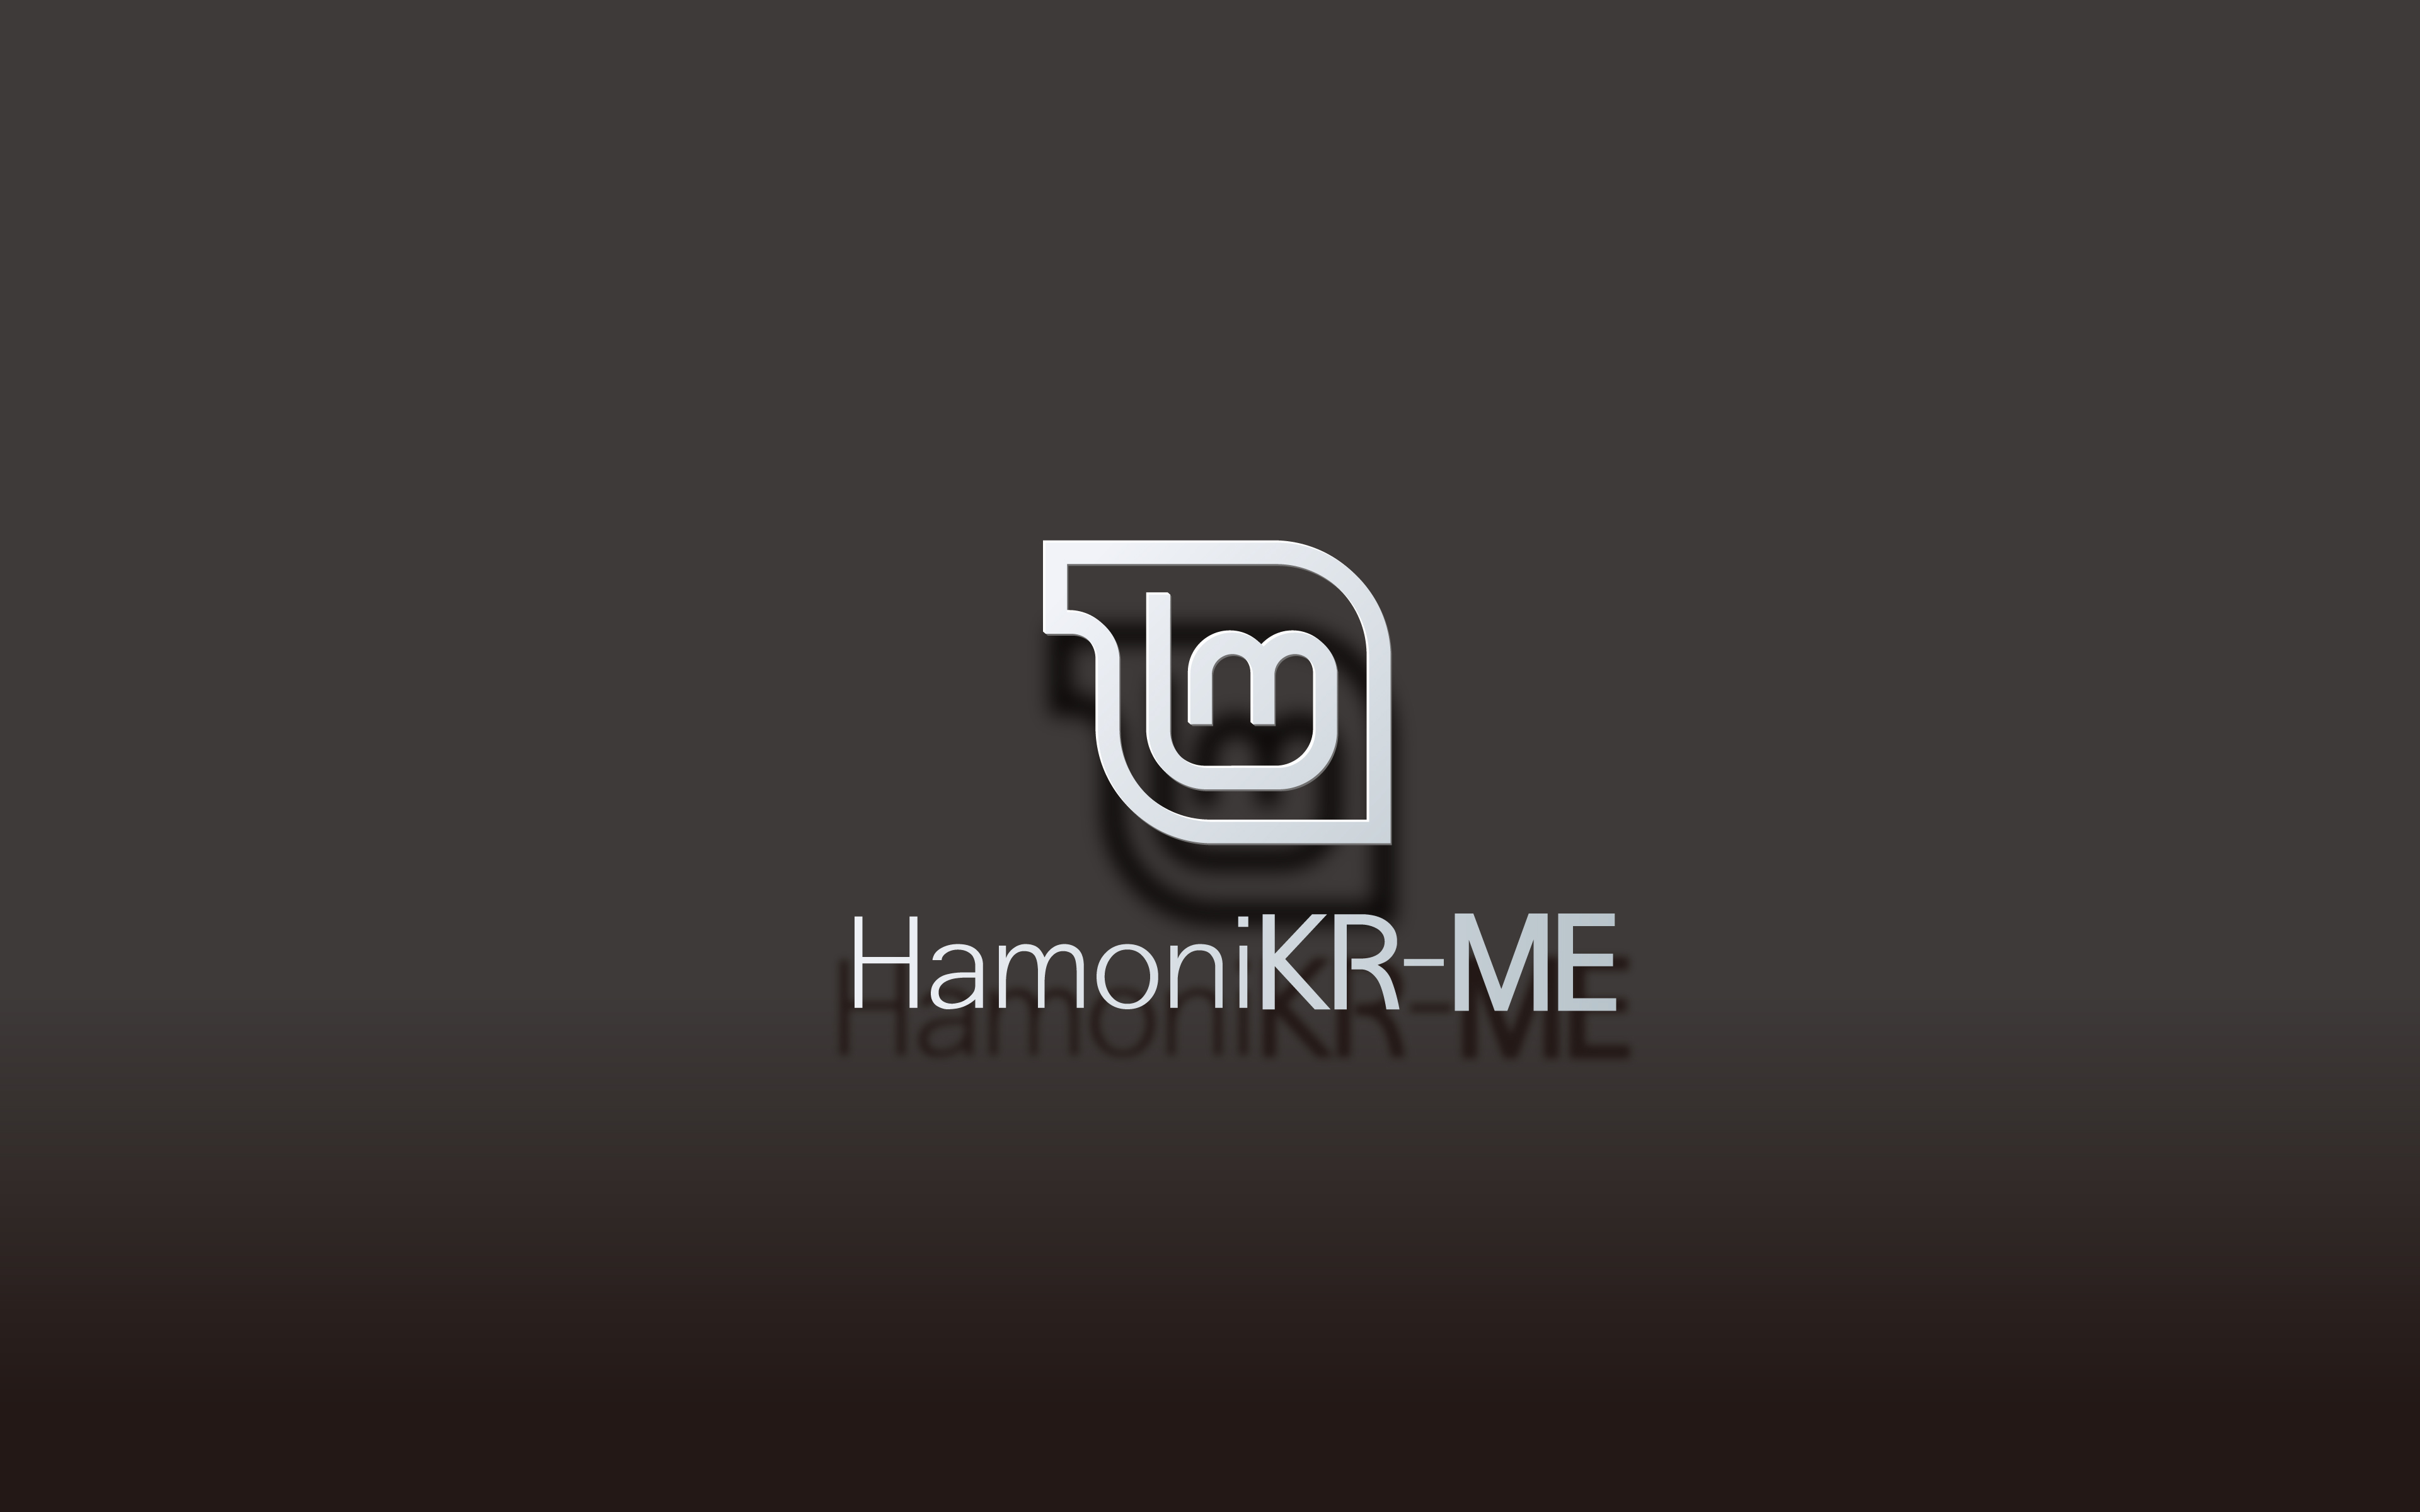 hamoniKR-ME_3840x2400_bg3.jpg